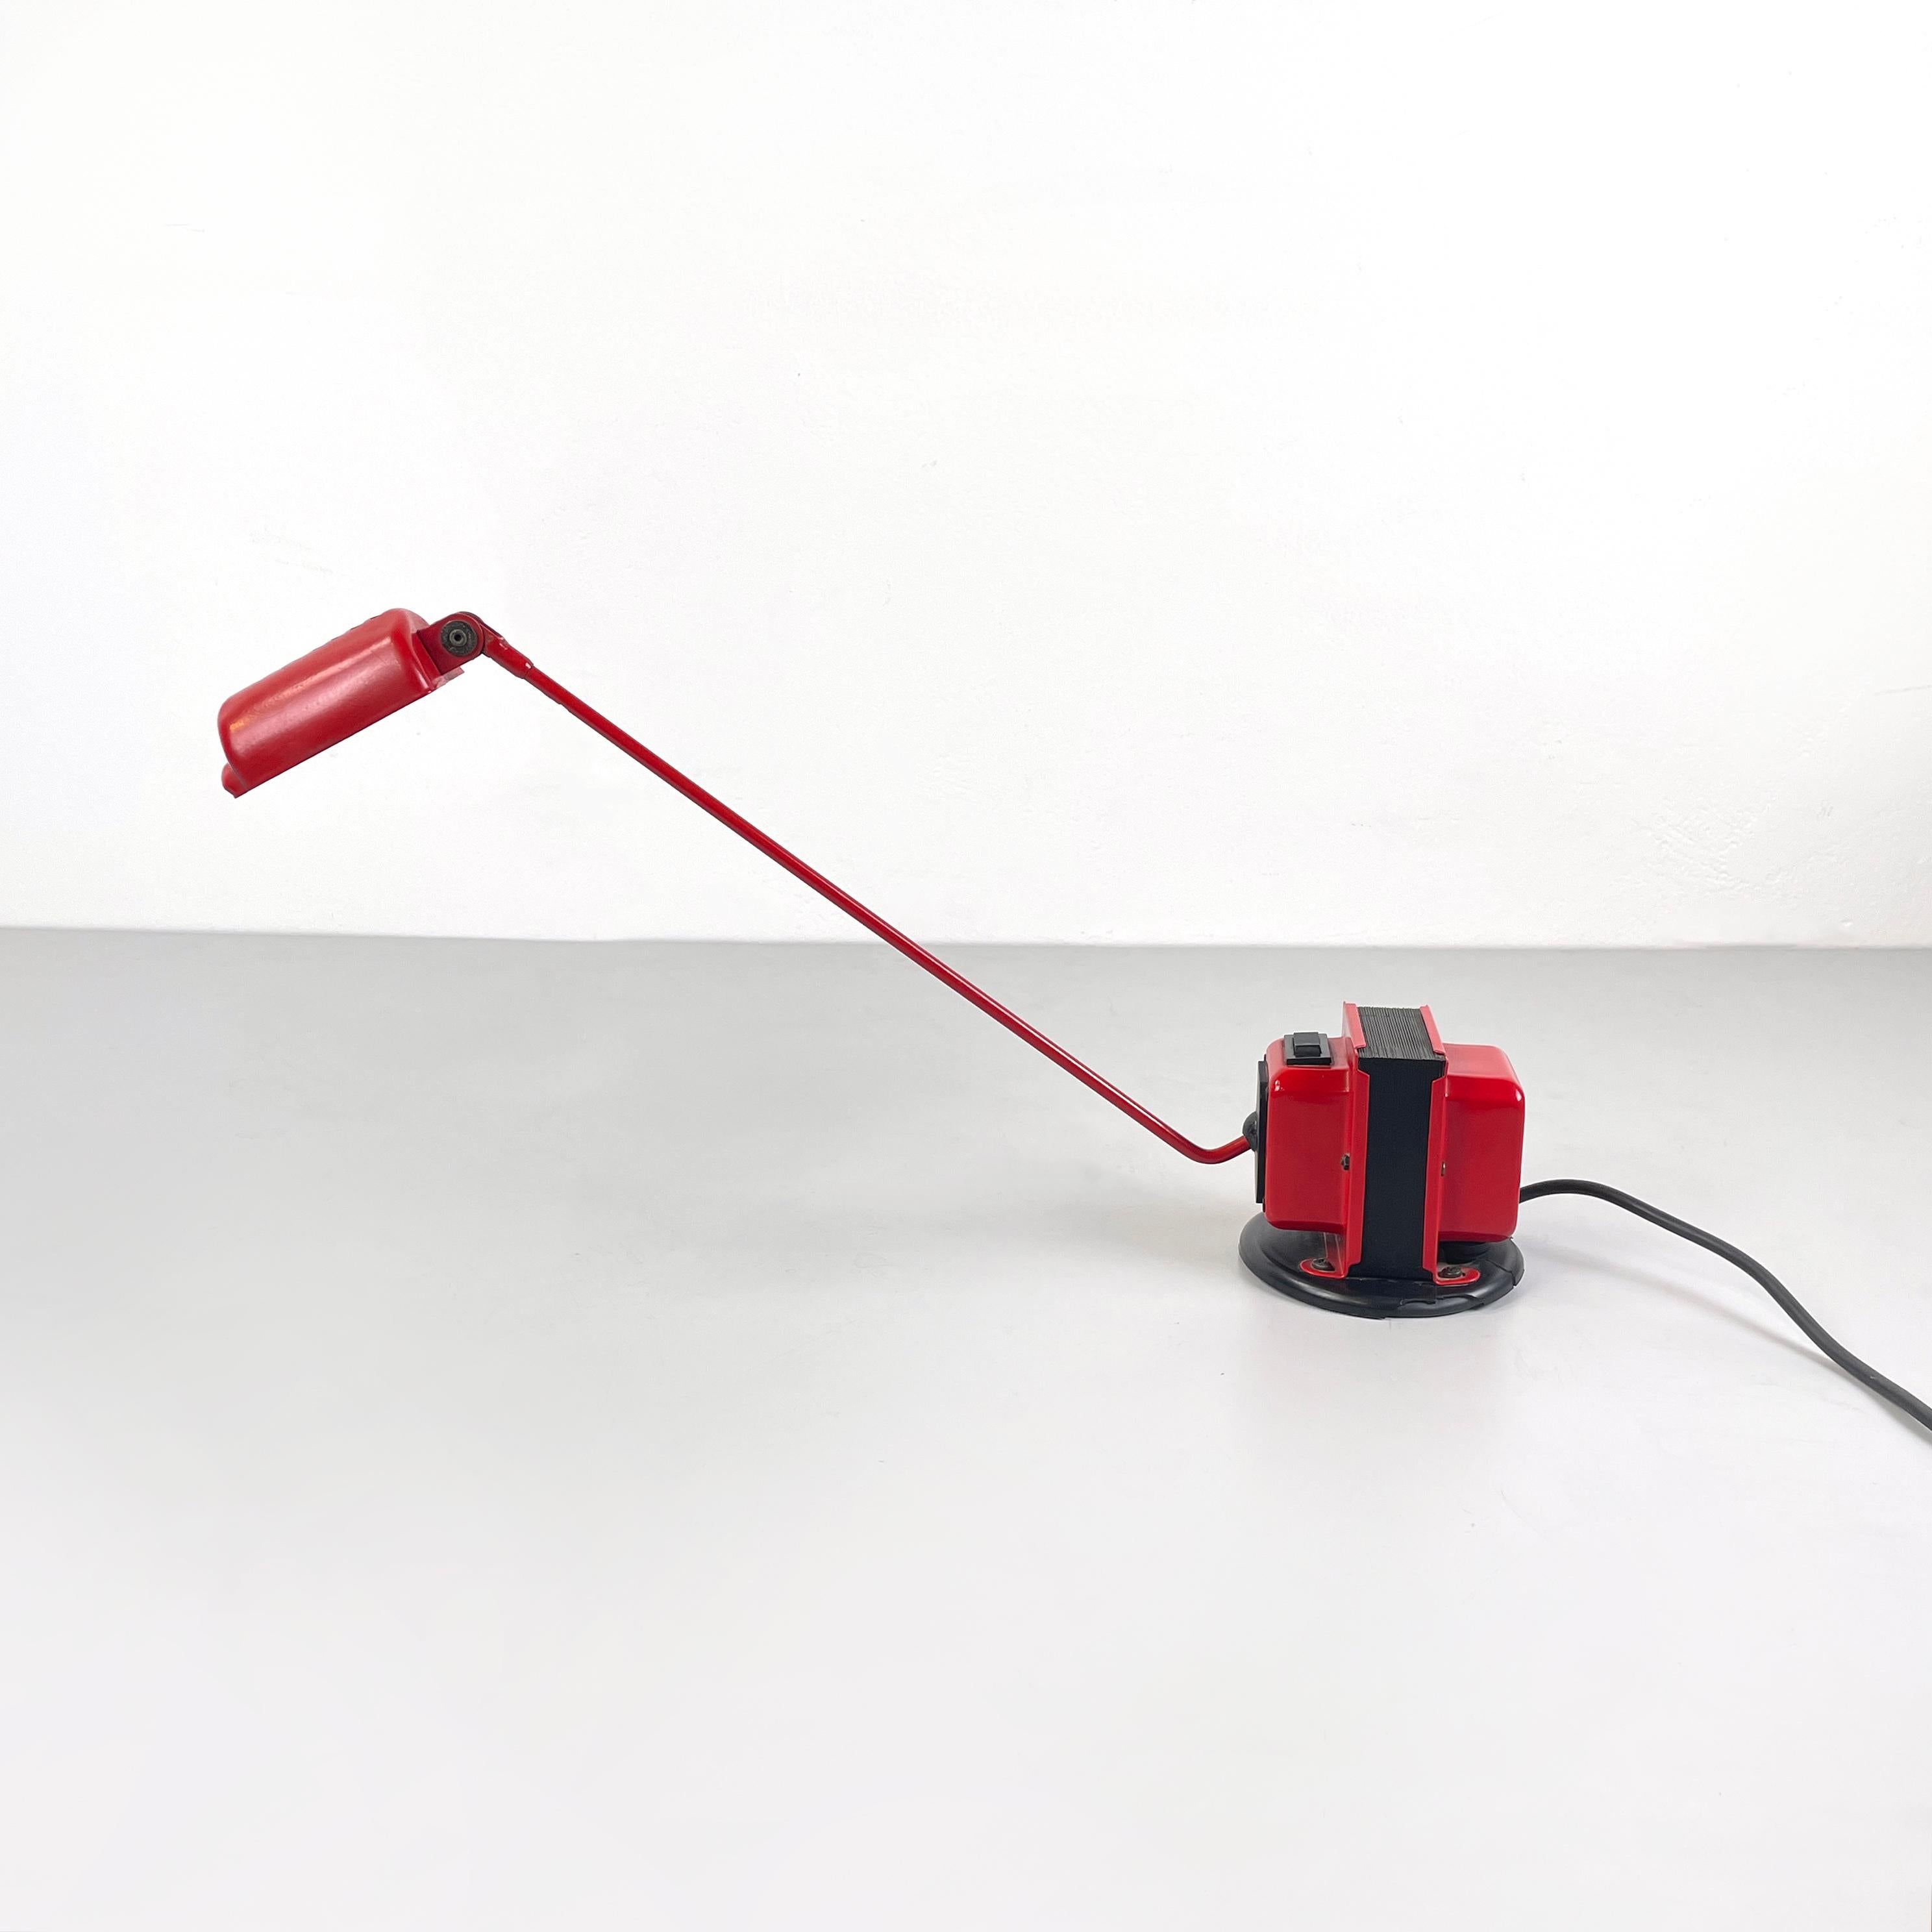 Italian modern red metal Adjustable table lamp Daphine by Tommaso Cimini for Lumina, 1980s
Adjustable table lamp mod. Daphine, in bright red painted metal. The semi-cylindrical diffuser is fully adjustable. La struttura è composta da un braccio a